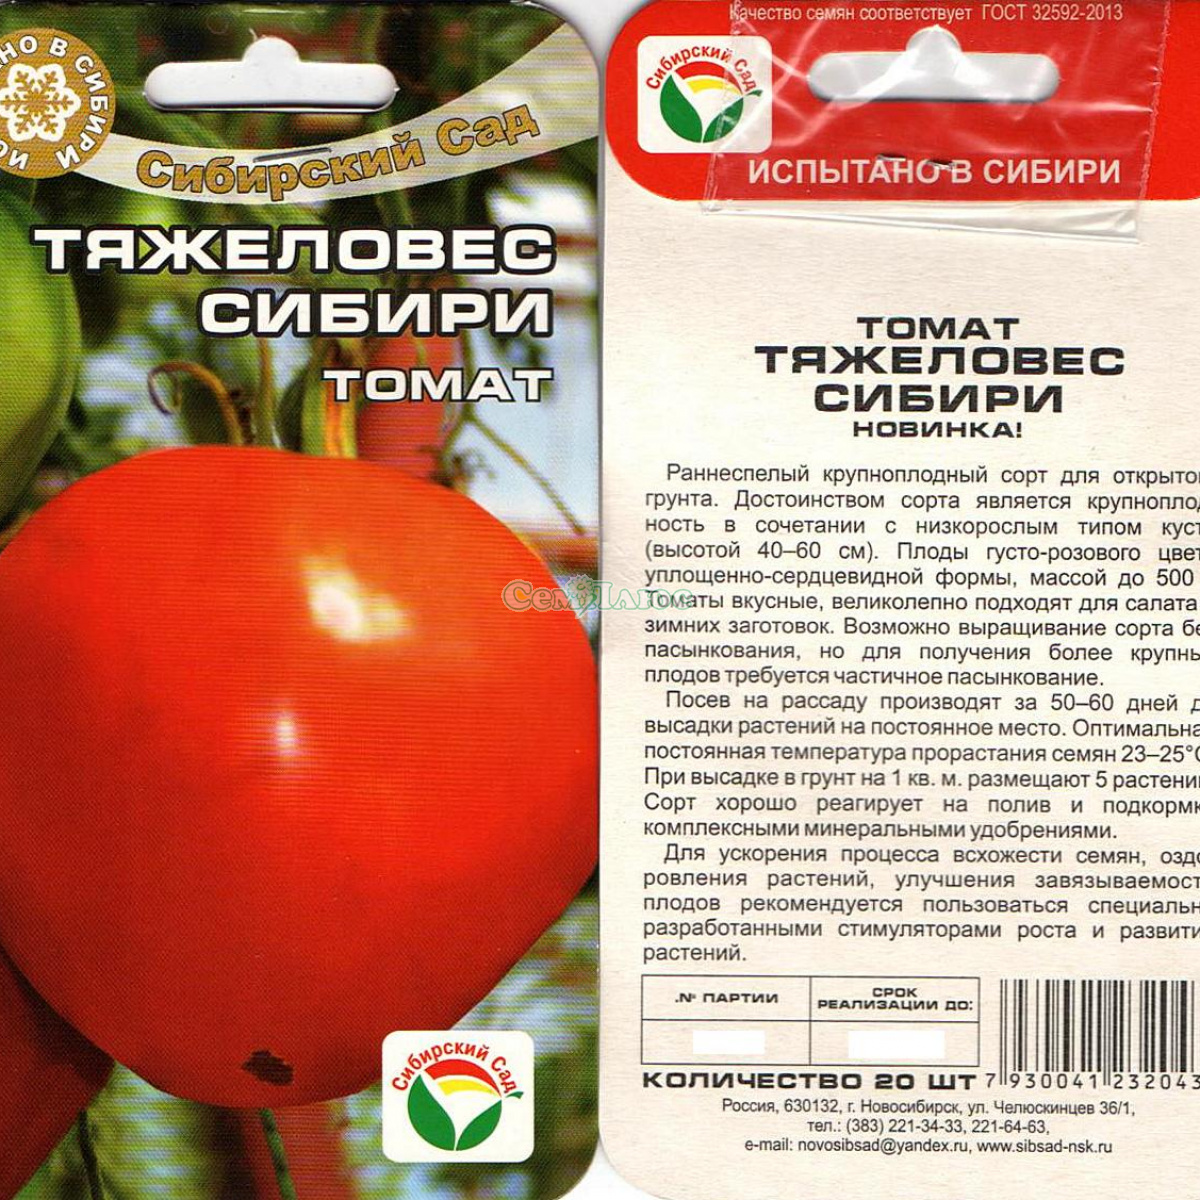 Детерминантные томаты: сорта с описанием и фото